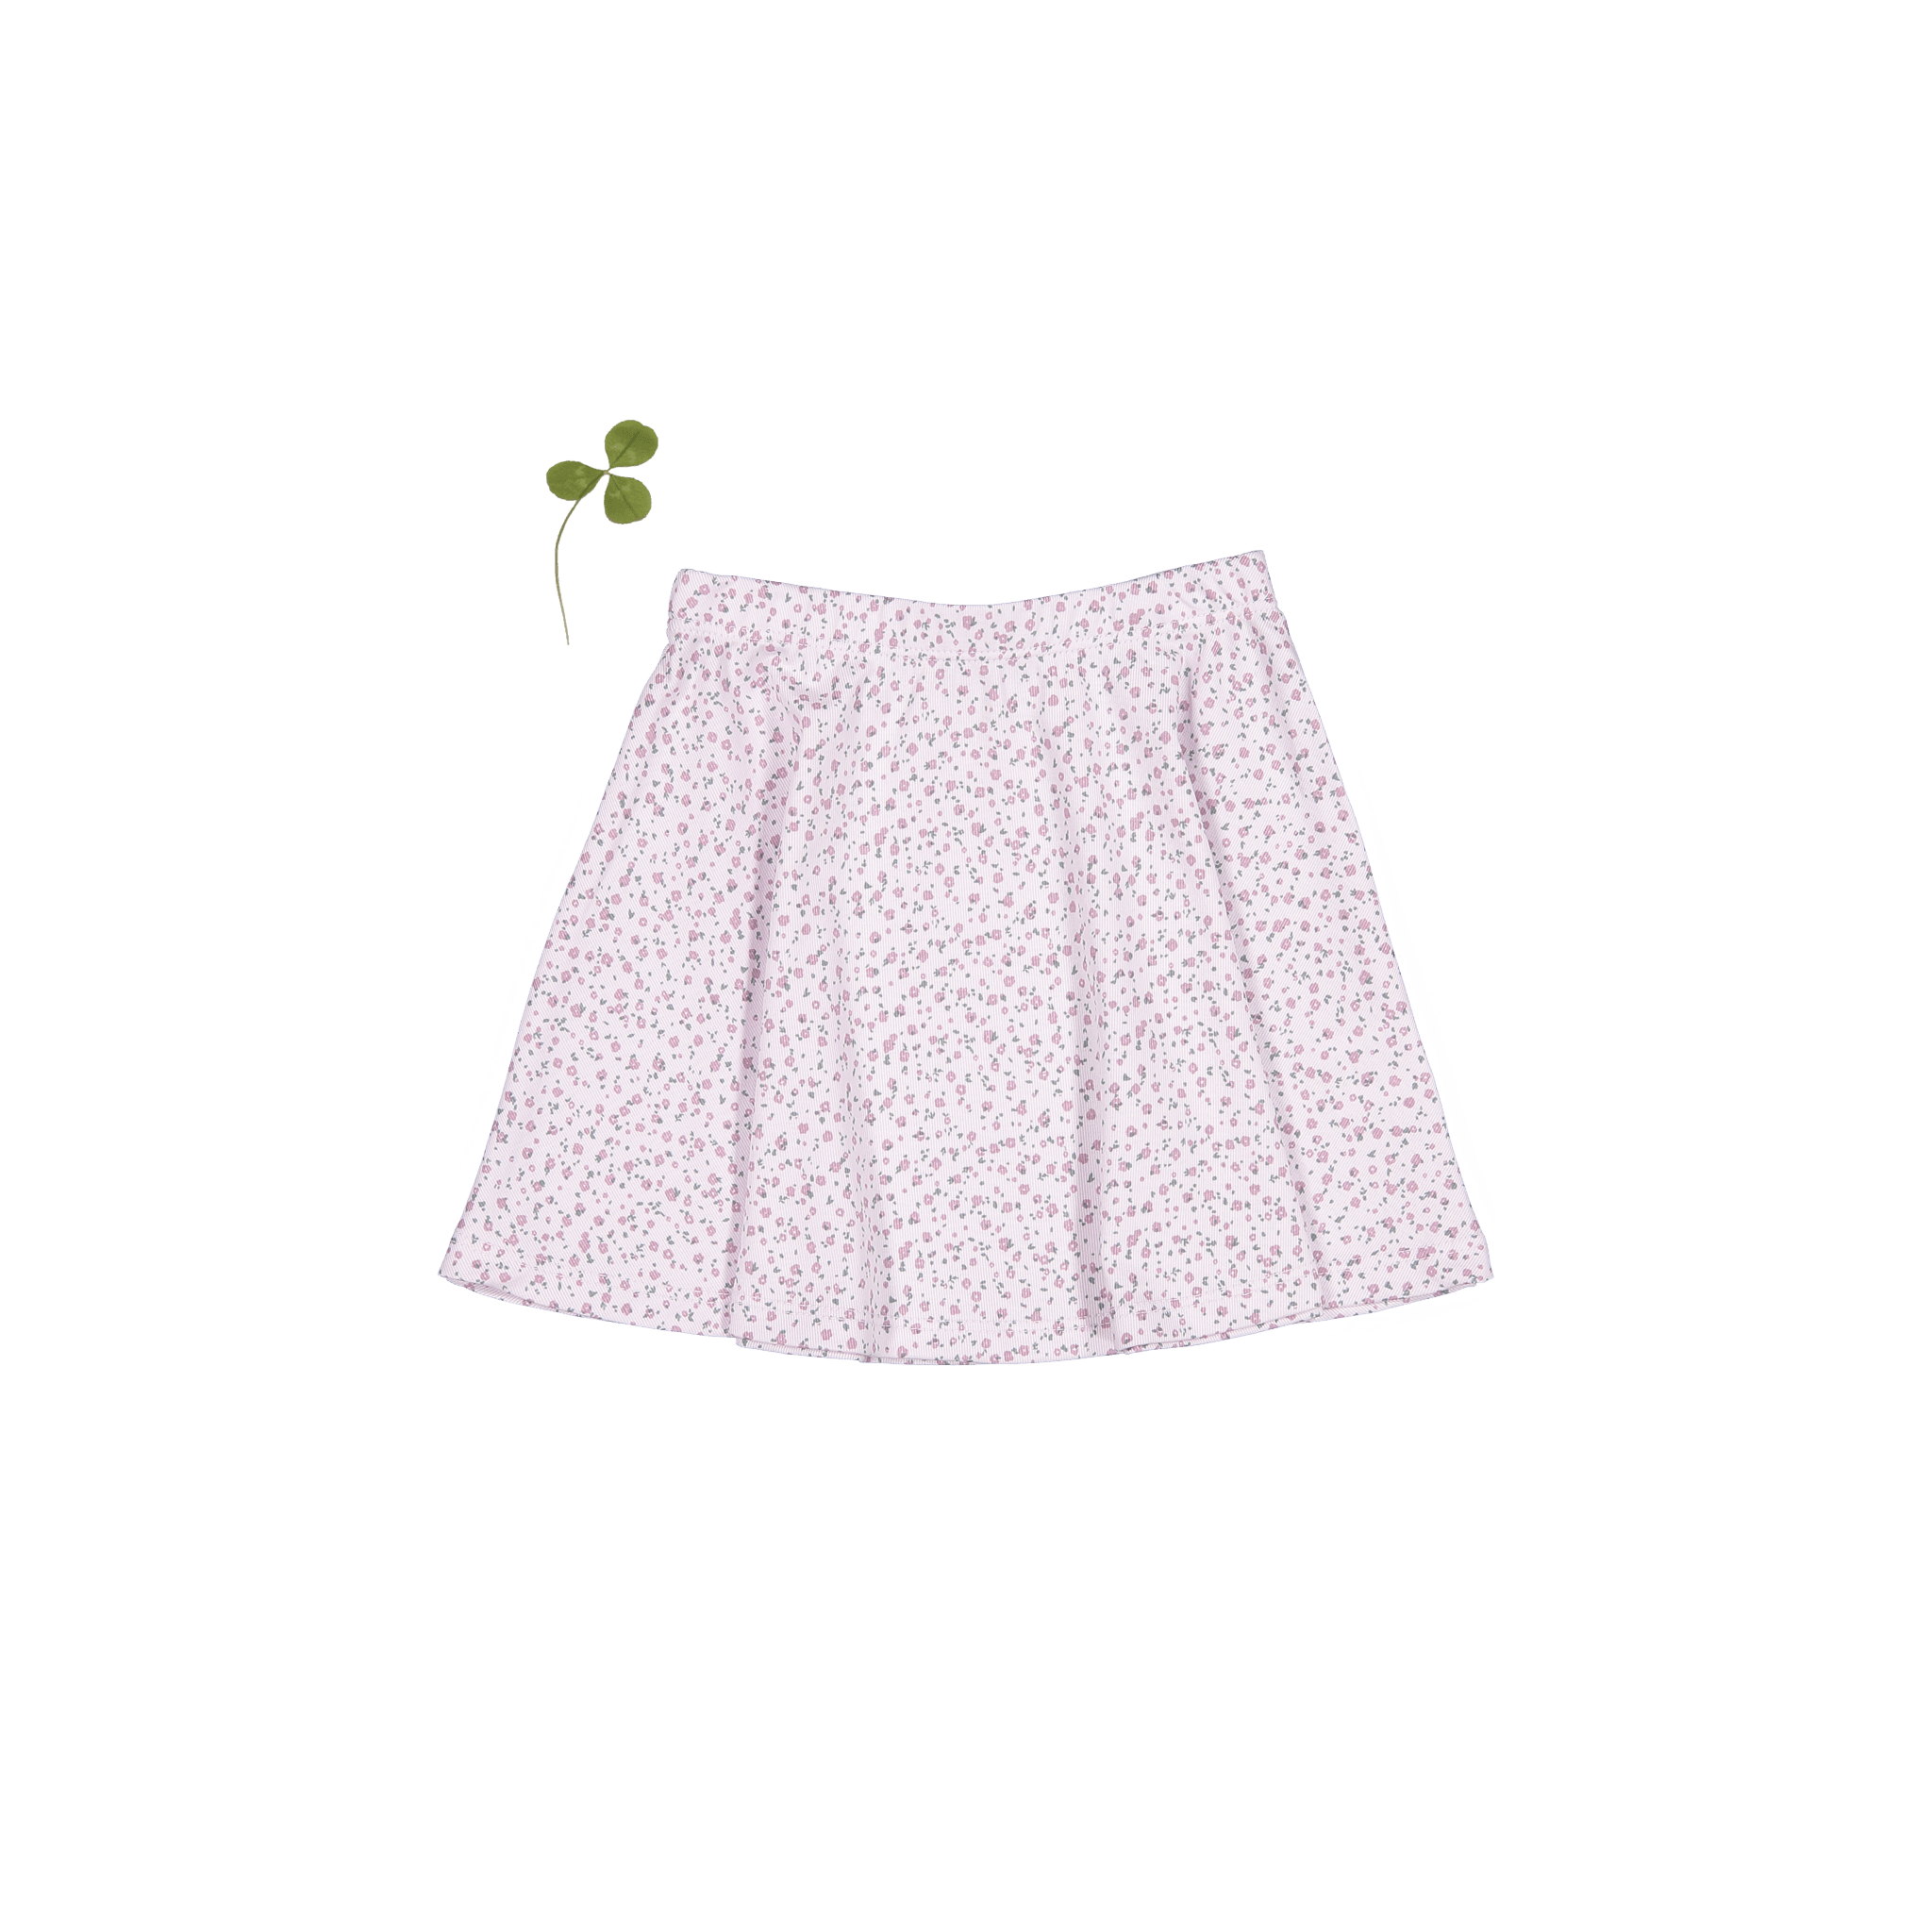 The Printed Skirt - Lilac Bud